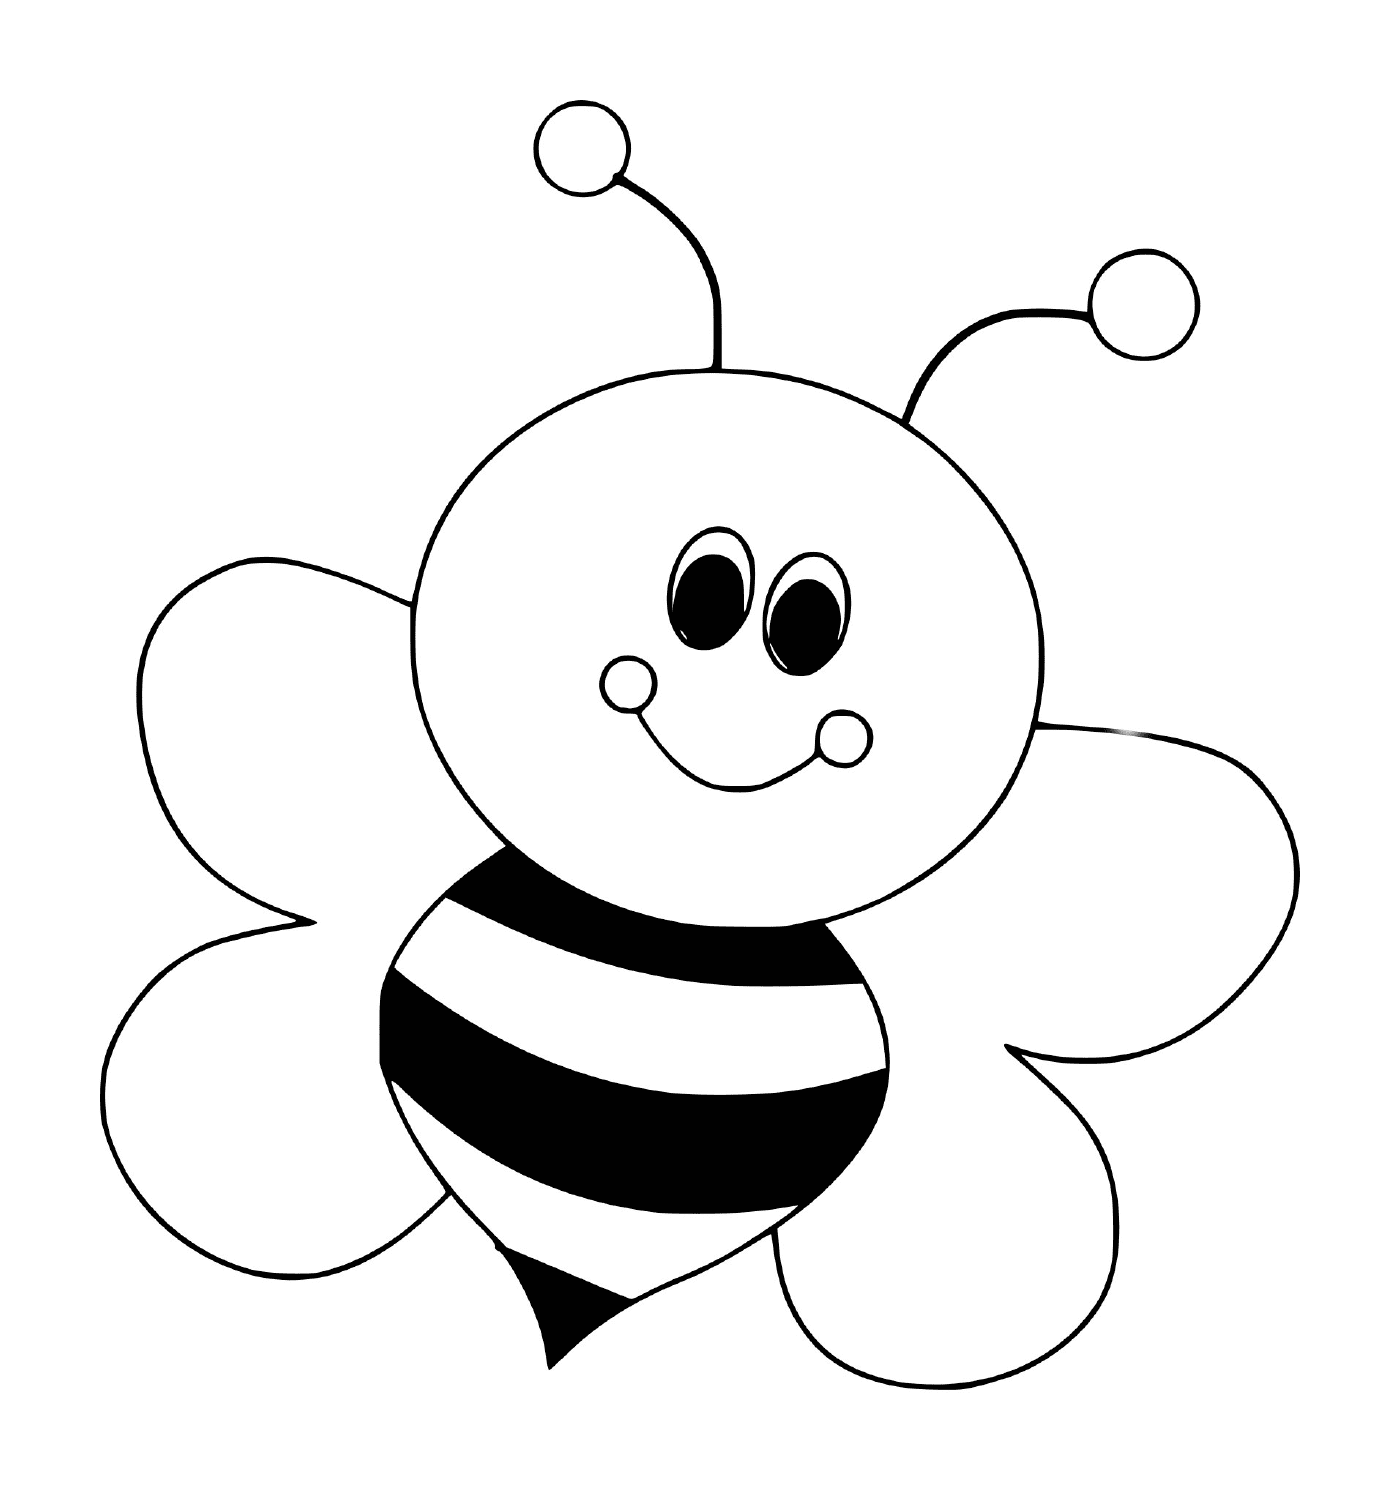  可爱的微笑蜜蜂 